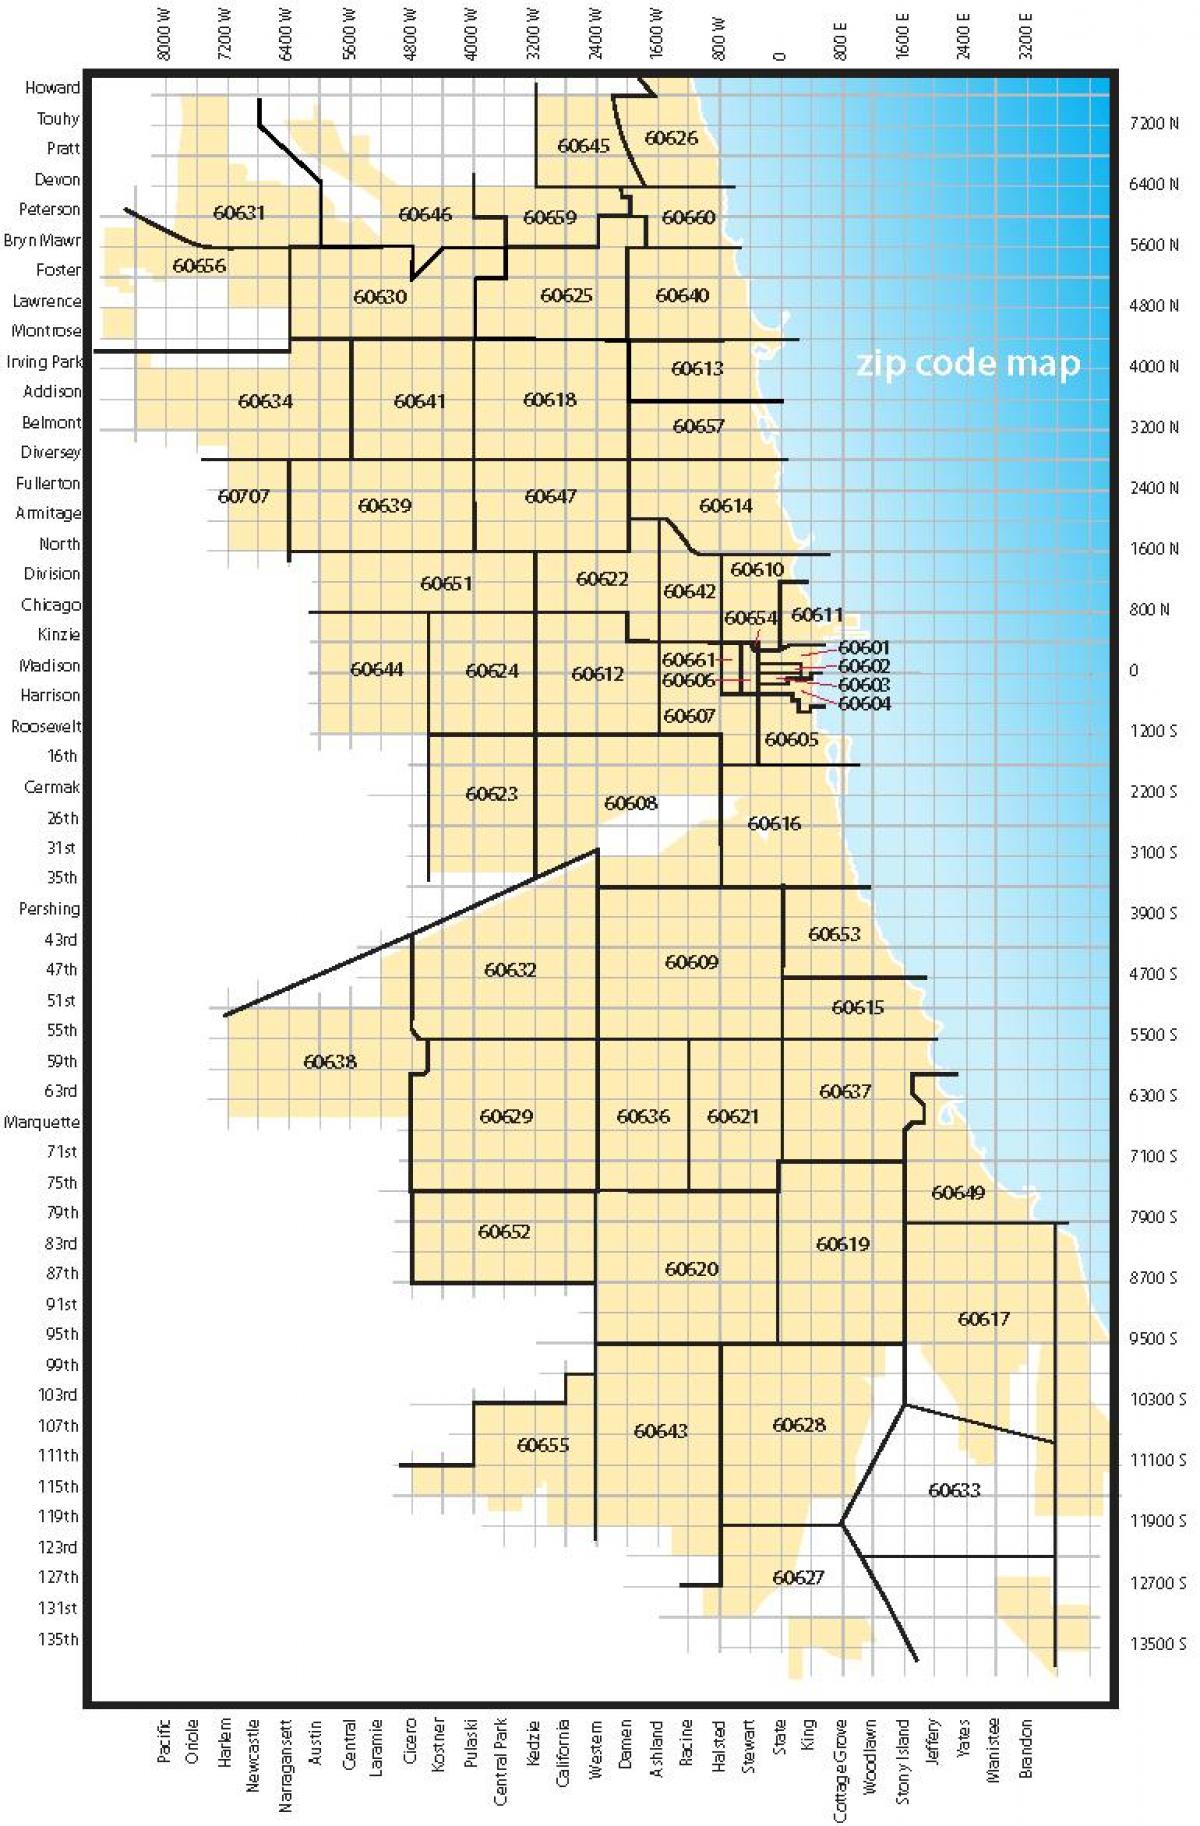 რუკა ჩიკაგოში საფოსტო კოდები